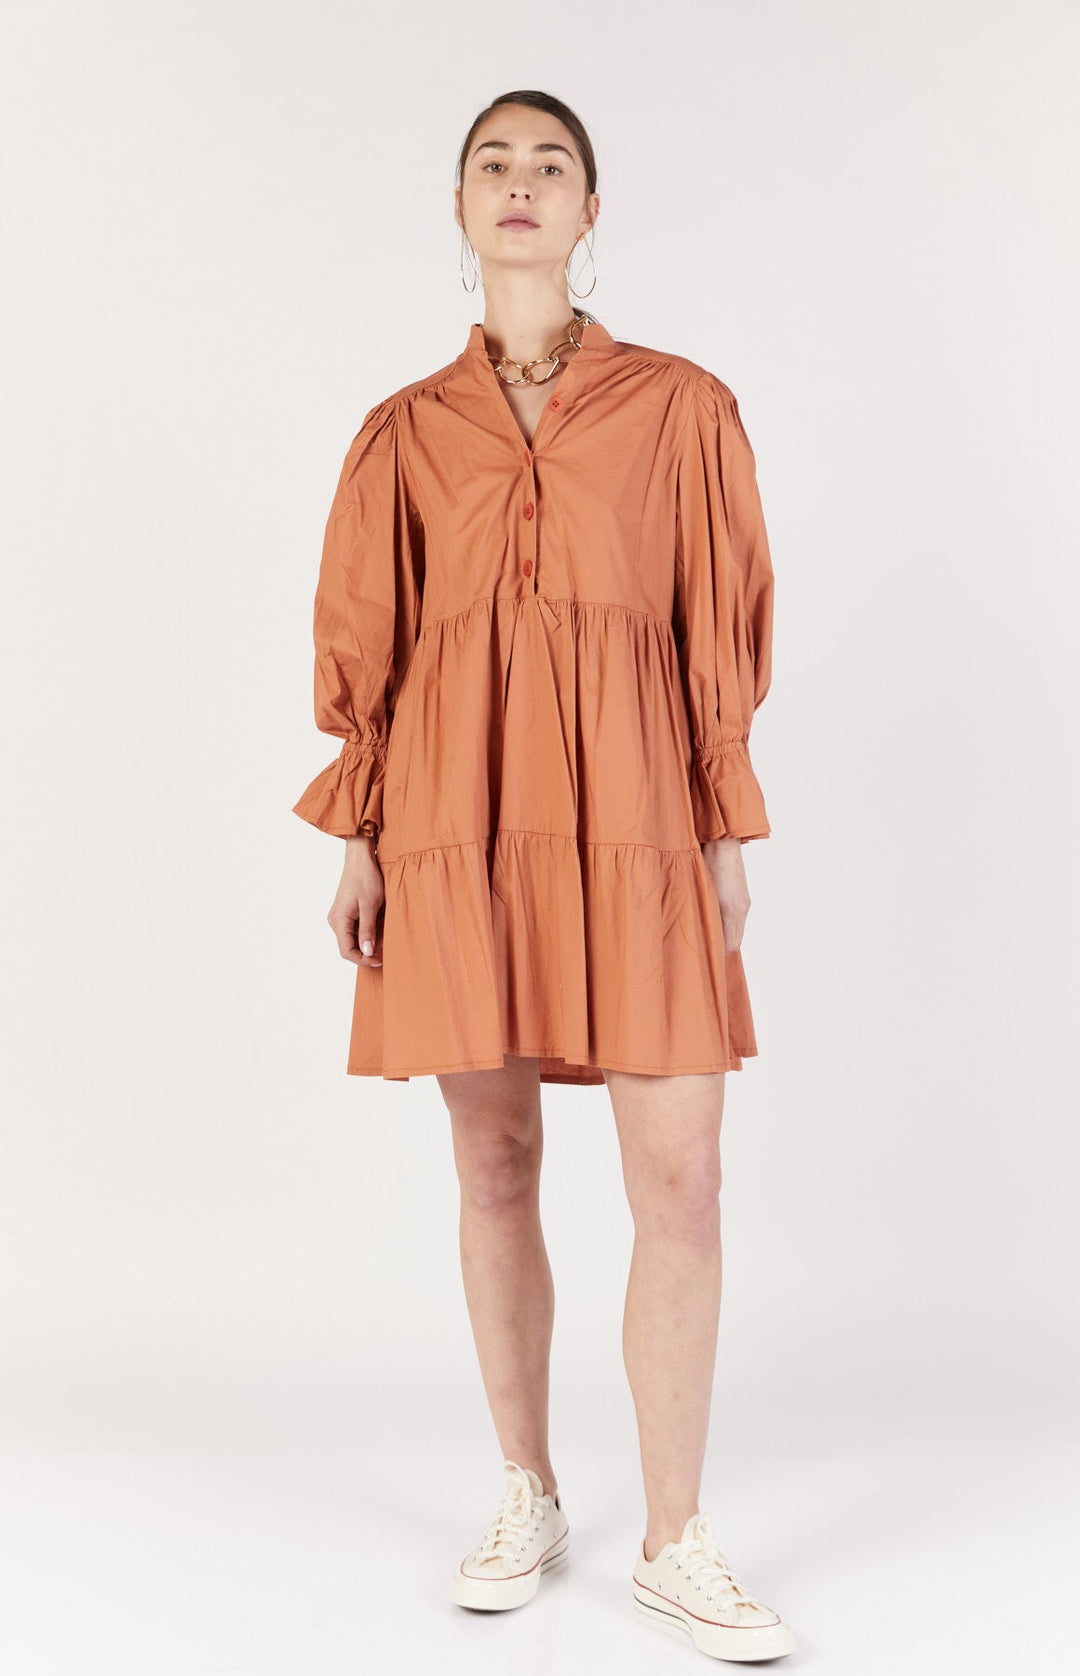 שמלת מיני ליפרי בצבע חמרה - Dana Sidi